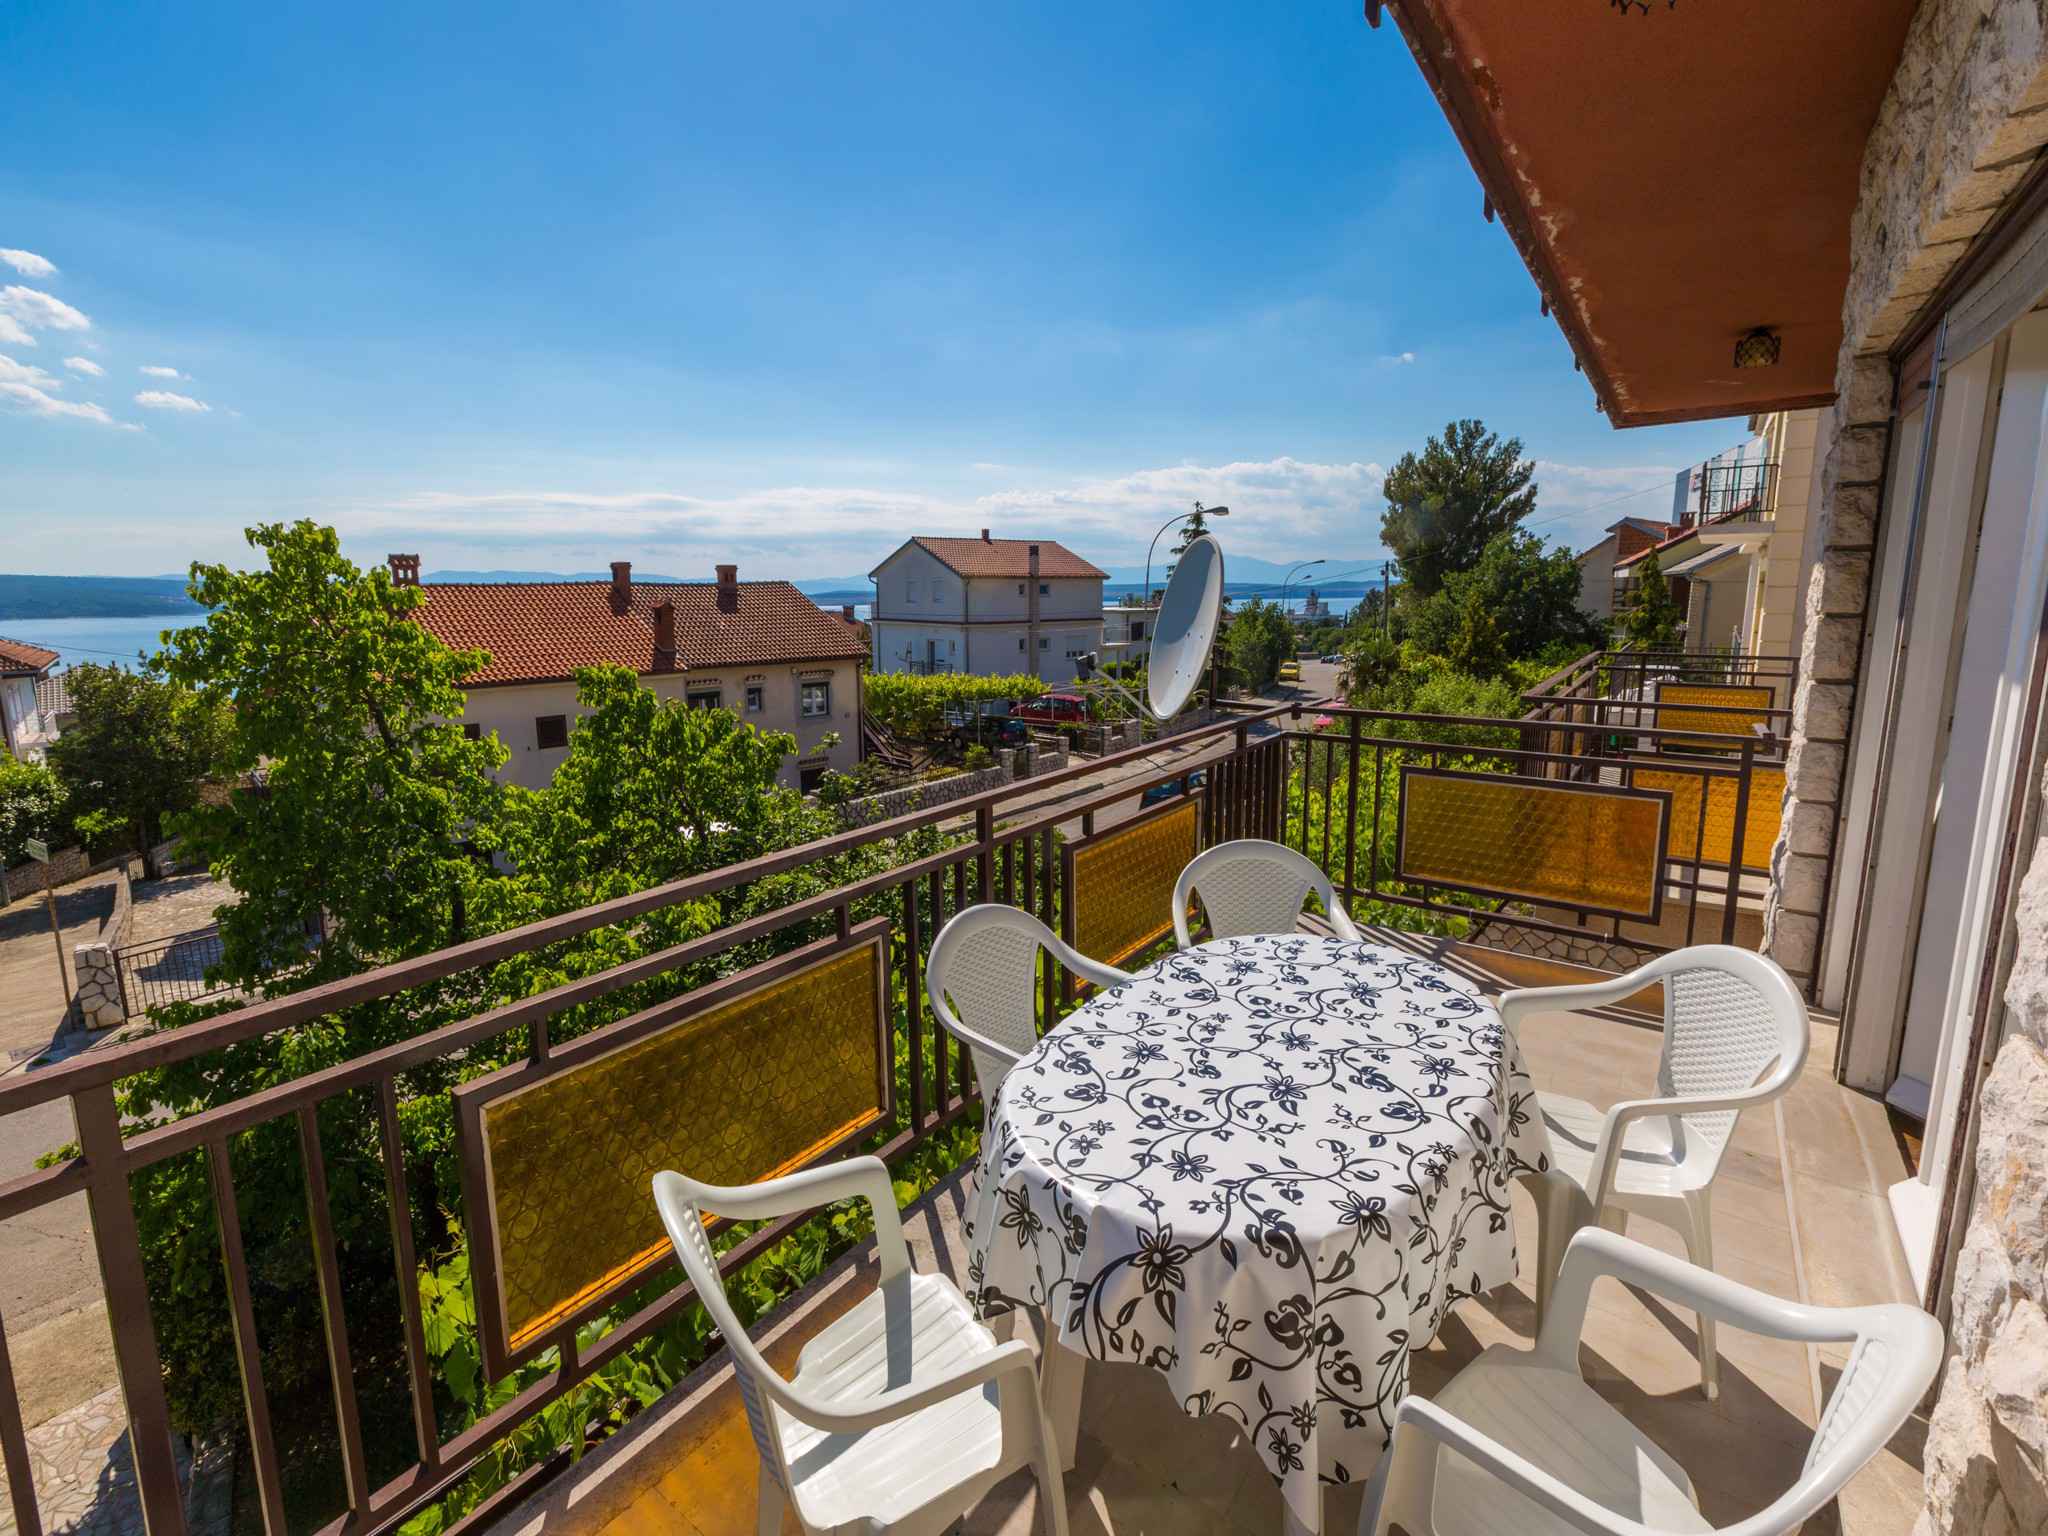 Ferienwohnung mit Balkon und Terrasse mit Meerblick (281414), Crikvenica, , Kvarner, Kroatien, Bild 8